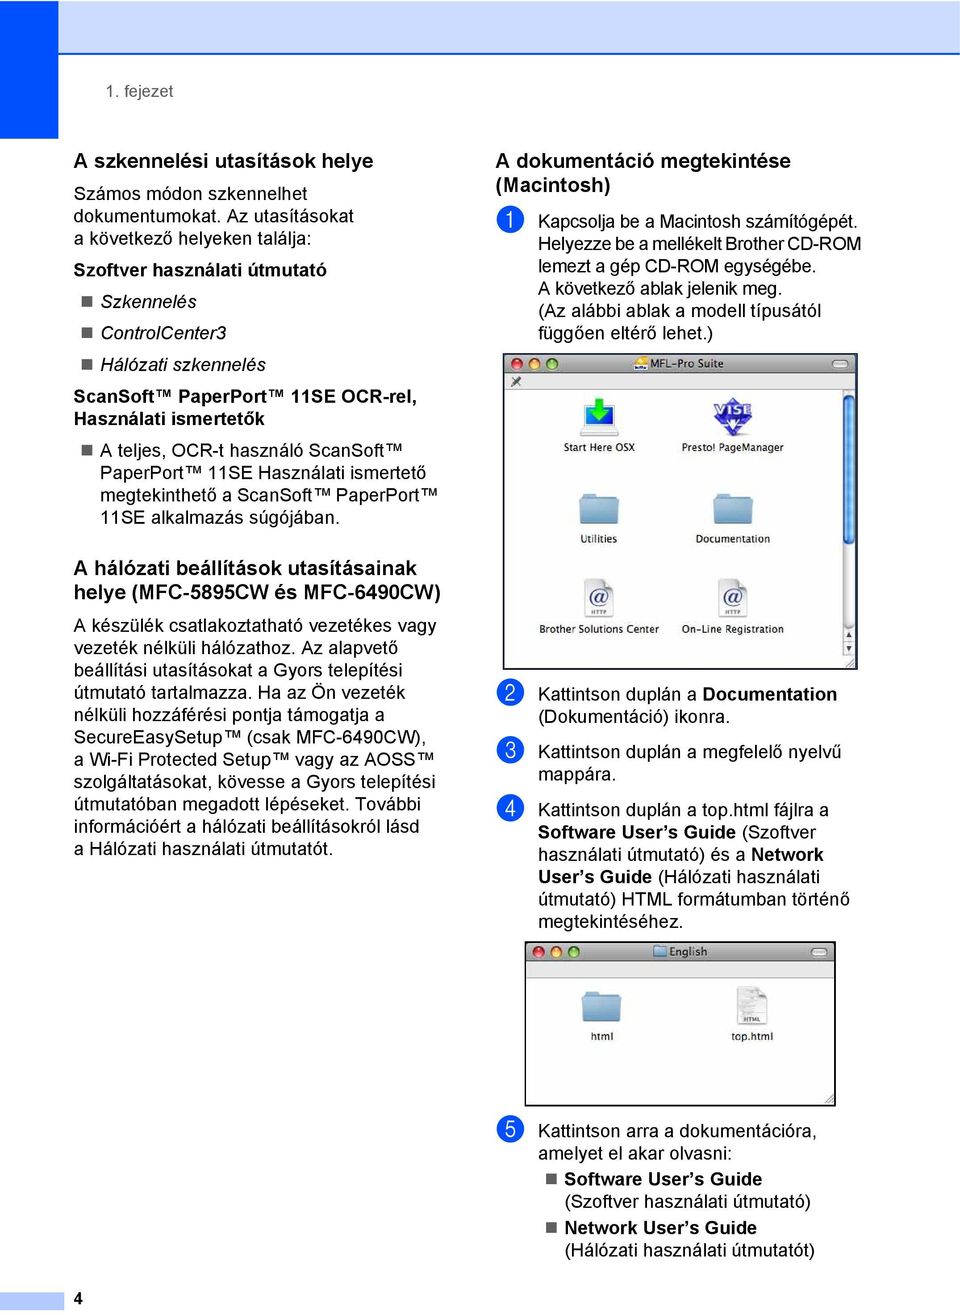 használó ScanSoft PaperPort 11SE Használati ismertető megtekinthető a ScanSoft PaperPort 11SE alkalmazás súgójában.